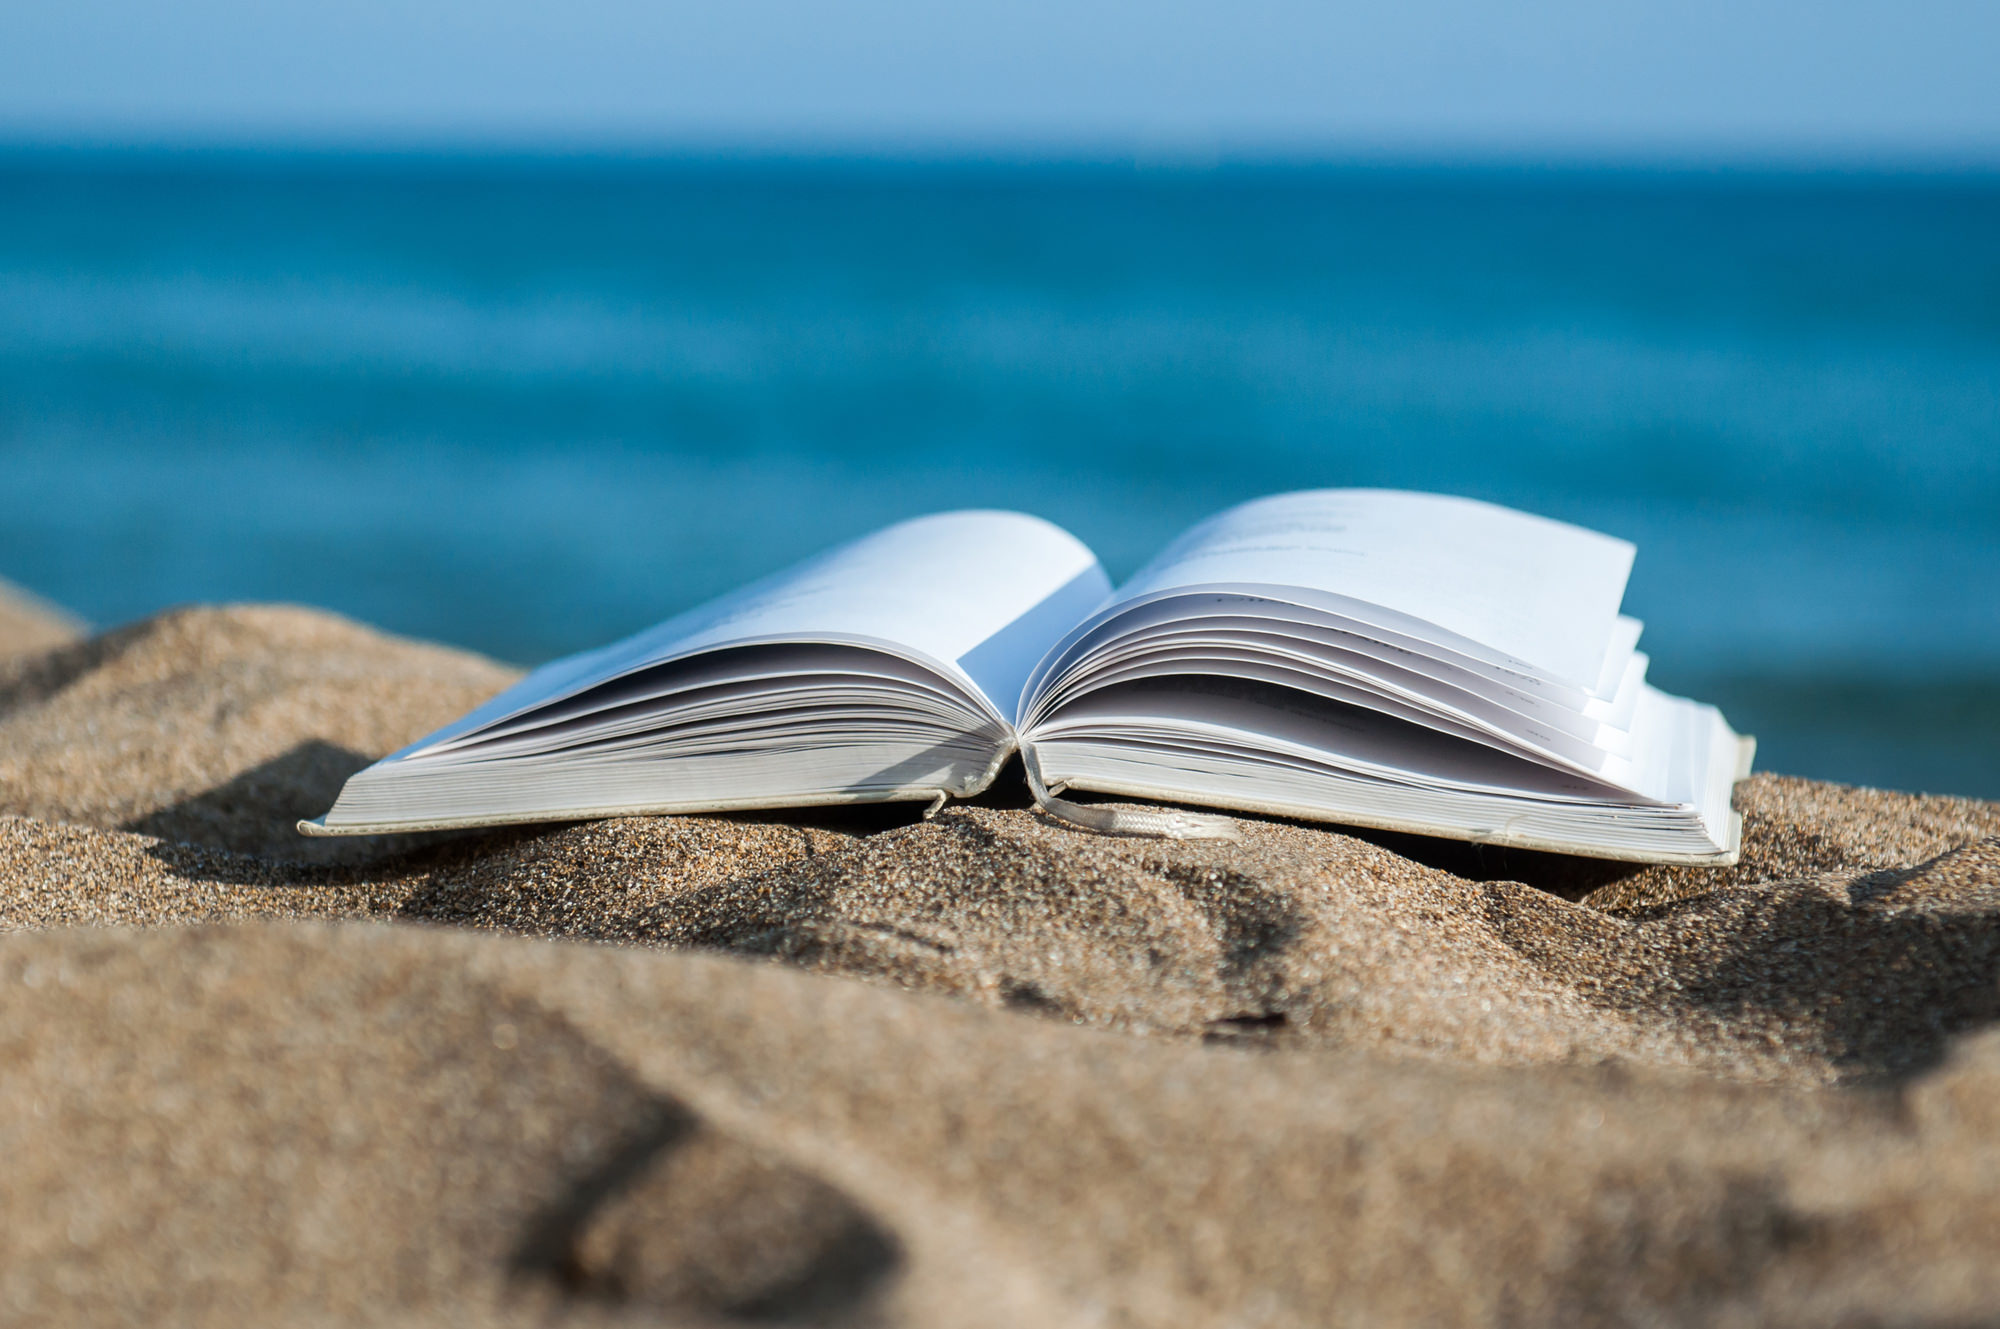 Book is ru. Чтение на пляже. Книга на фоне моря. Книга море. Лето с книгой.